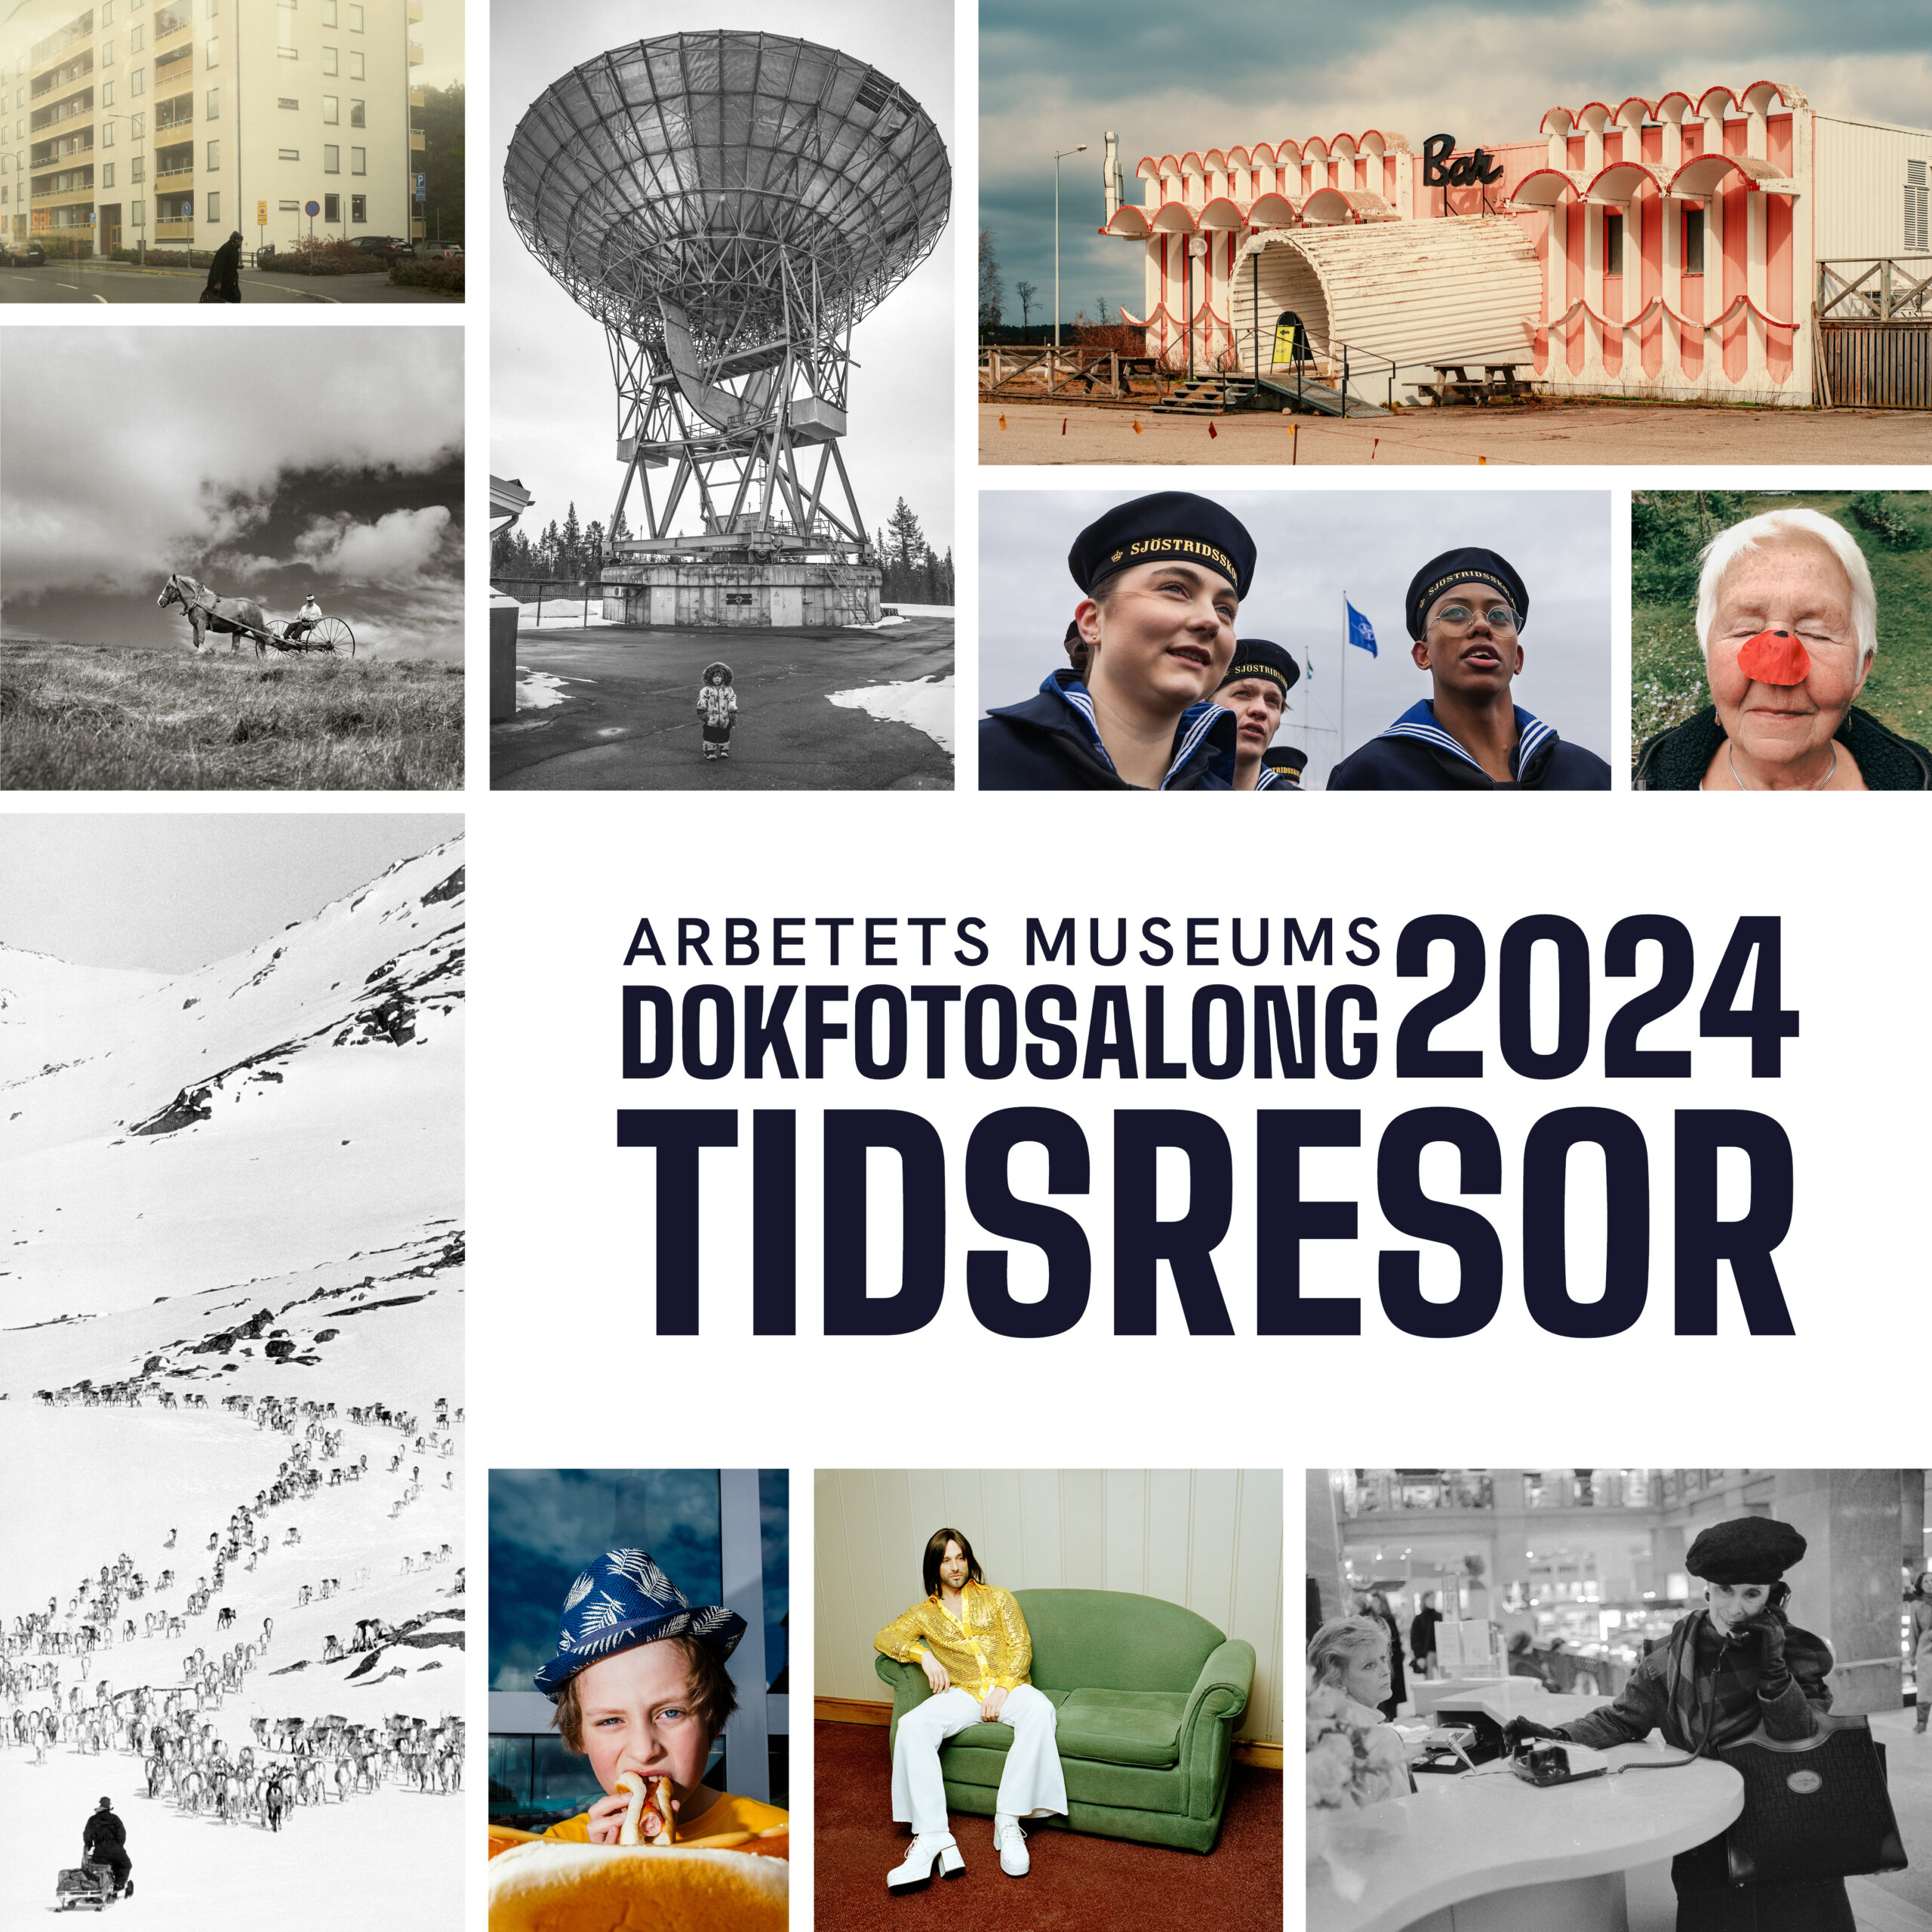 En mosaik av bilder från några av de antagna i årets dokfotosalong, tillsammans med texten "Arbetets museums Dokfotosalong 2024: Tidsresor"